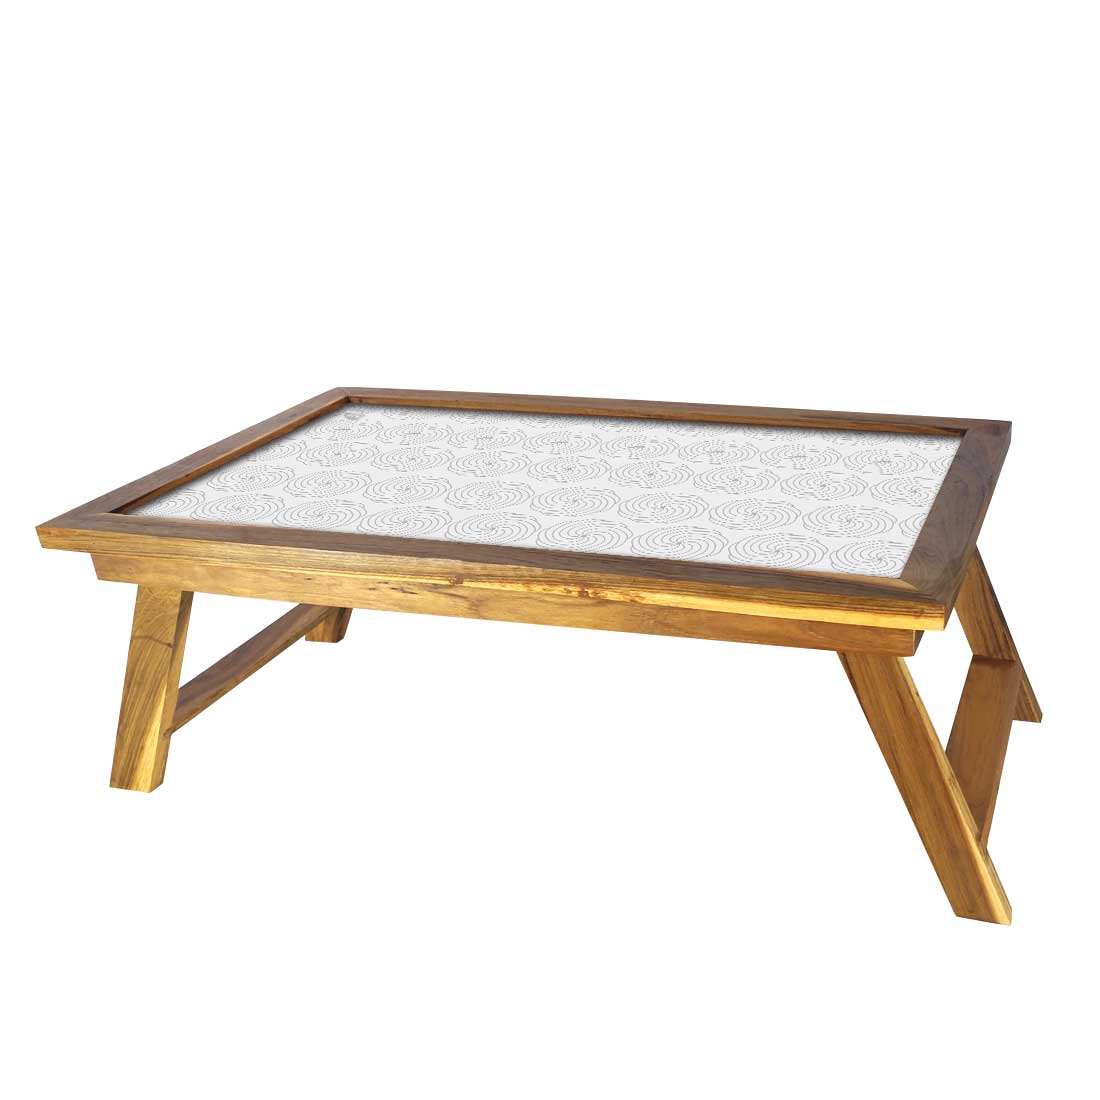 Nutcase Folding Laptop Table For Home Bed Lapdesk Breakfast Table Foldable Teak Wooden Study Desk - White Designer Flower Pattern Nutcase